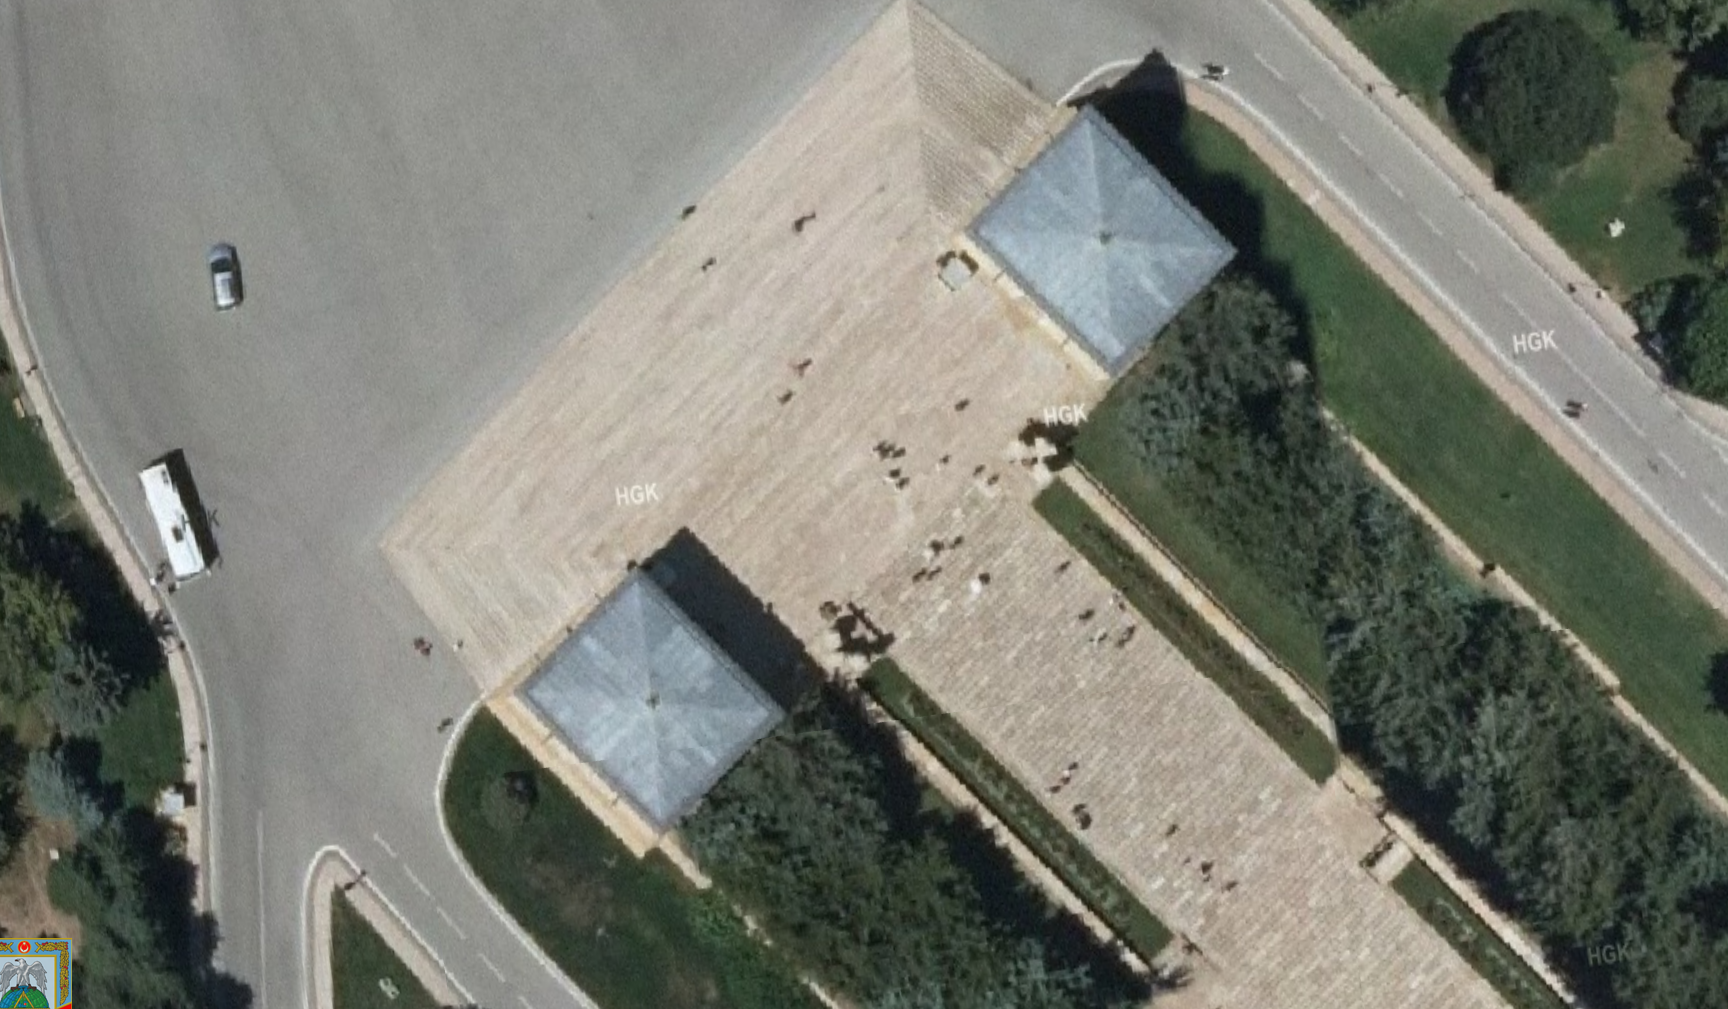 Milli “Google Earth” sivil kullanıma açıldı [Güncellendi]